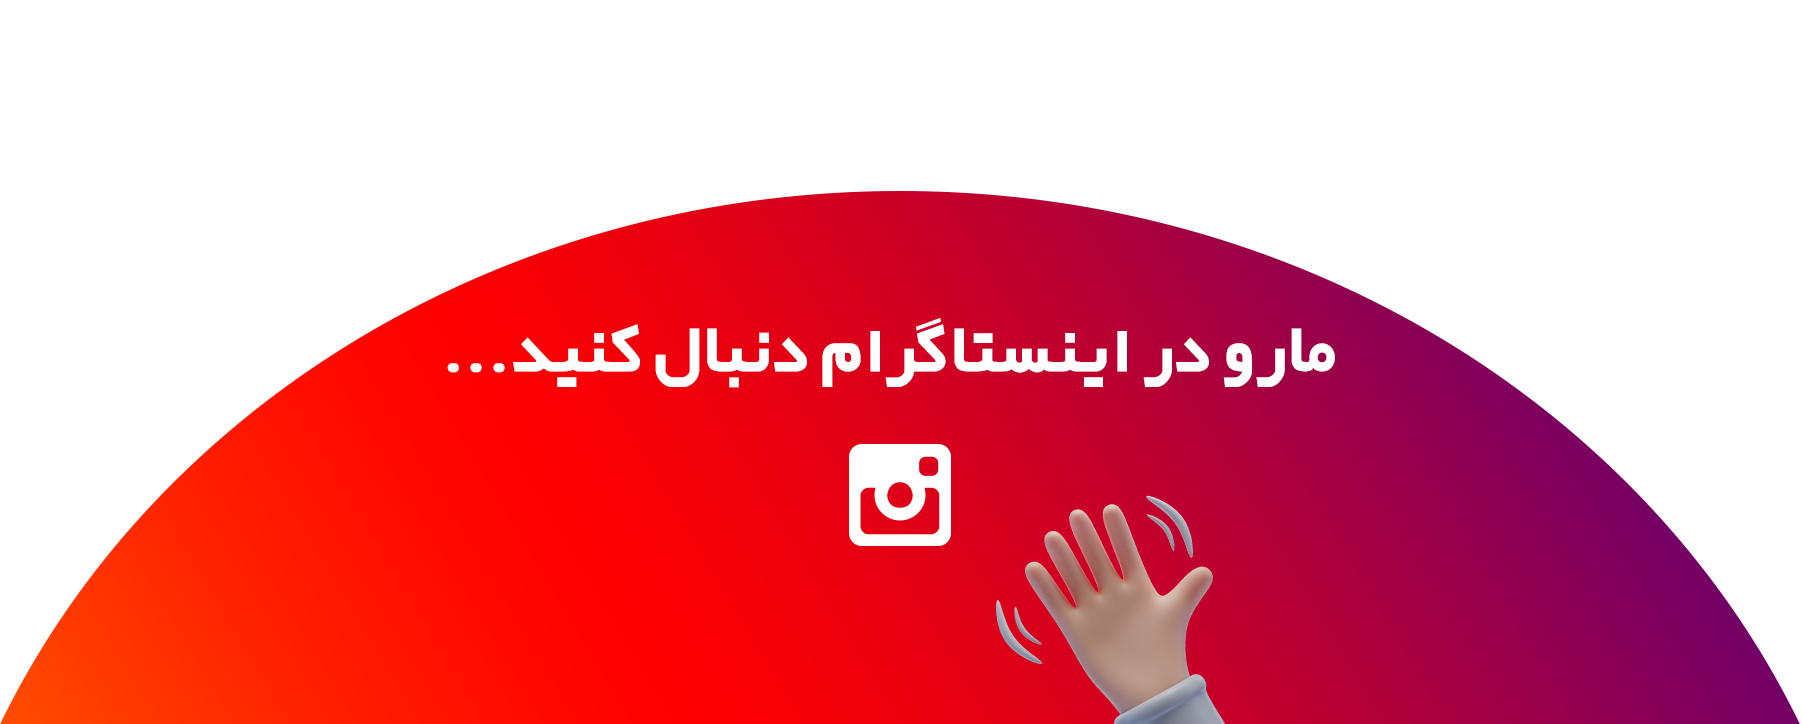 mehrazi instagram banner